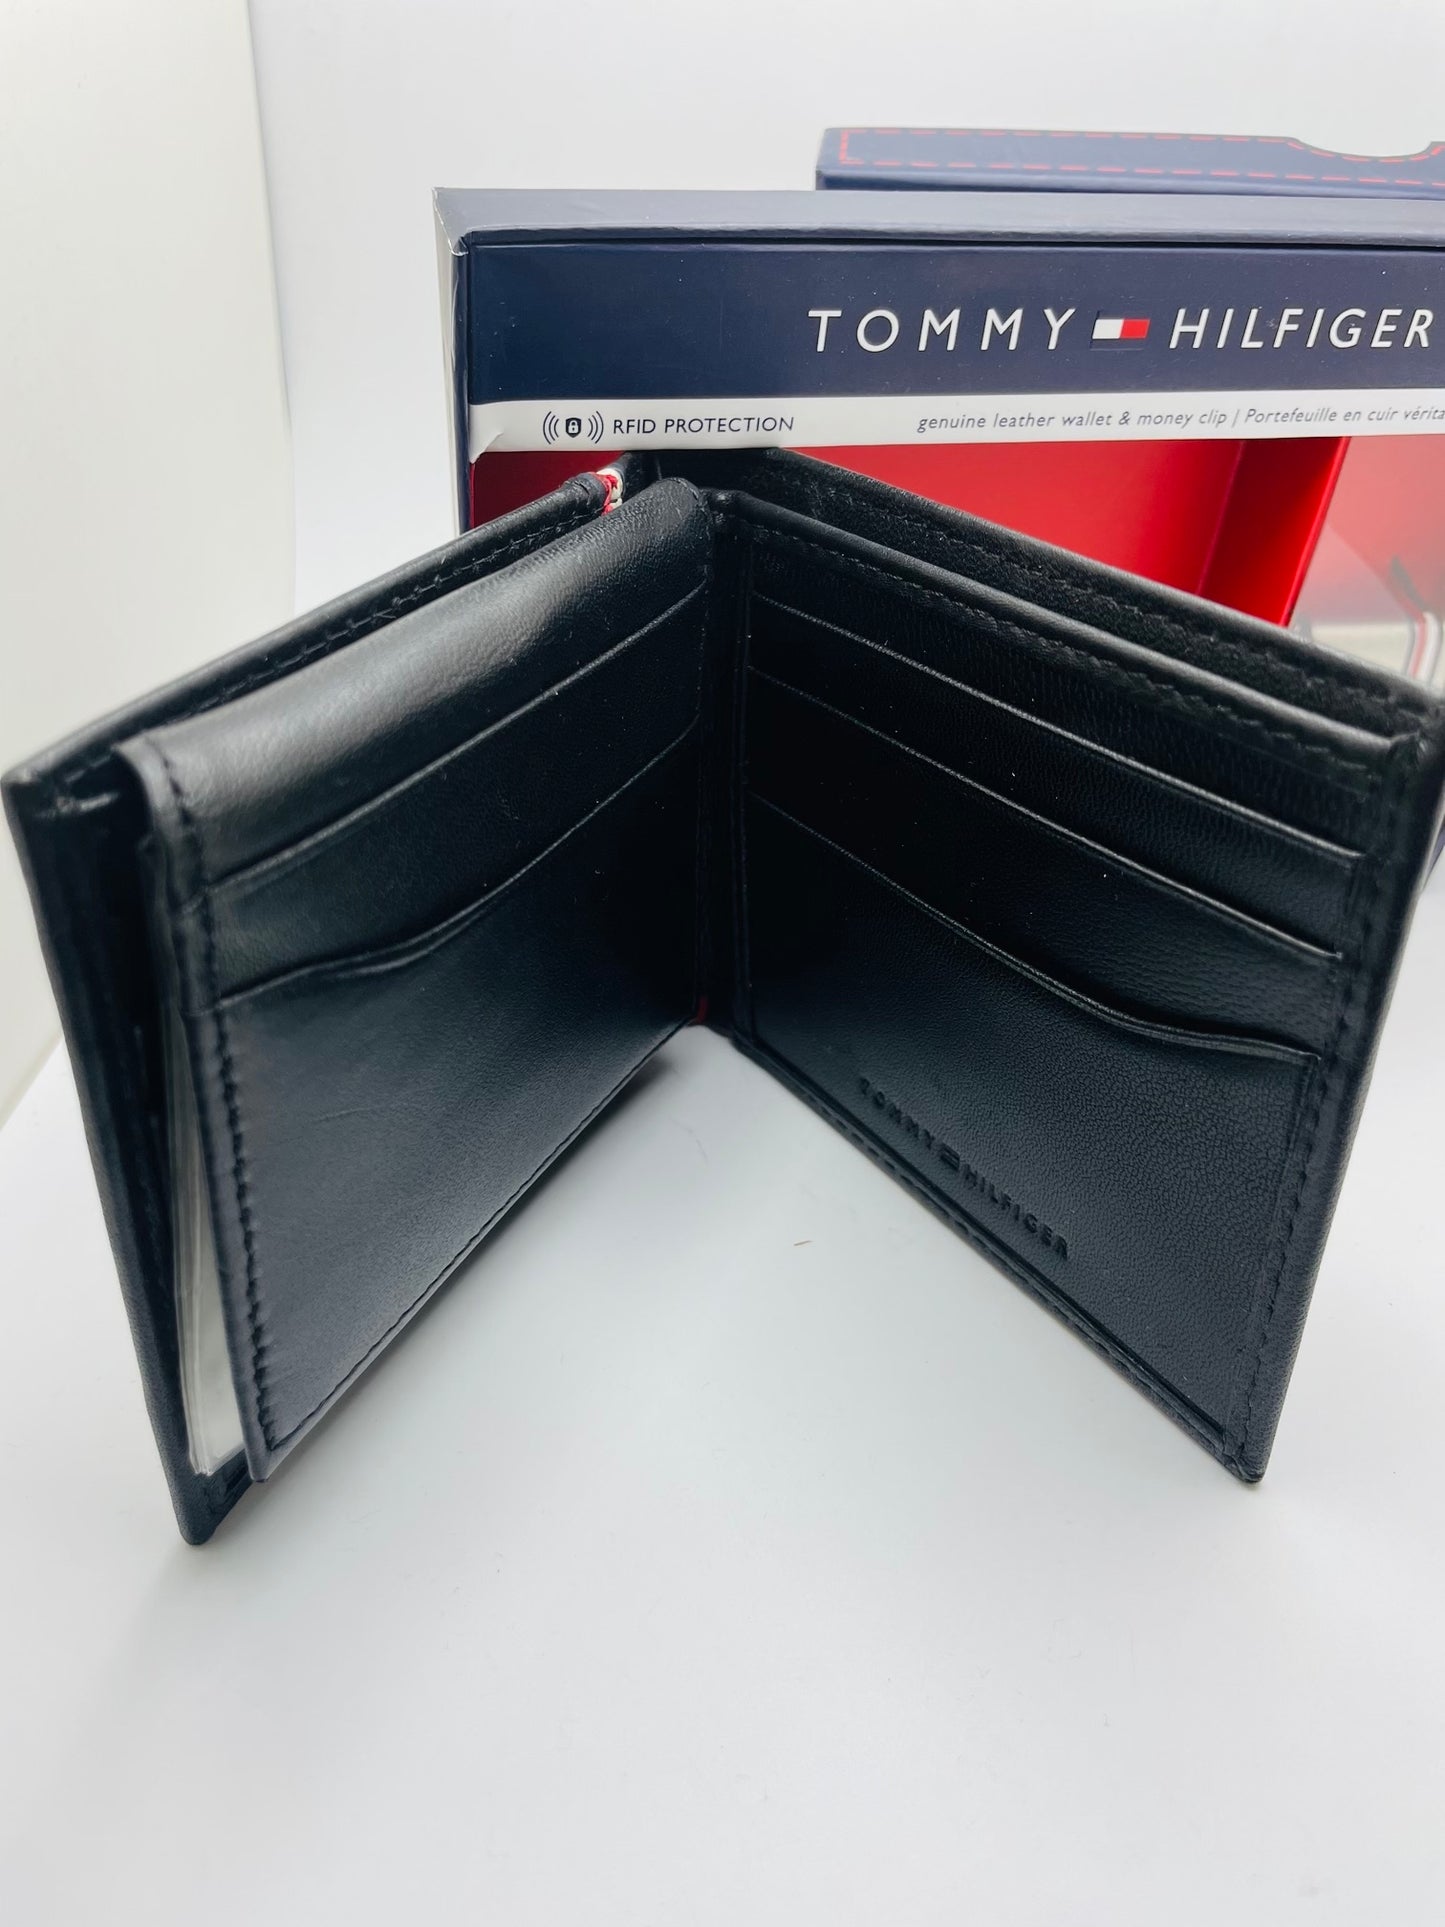 Tommy Hilfiger wallet set